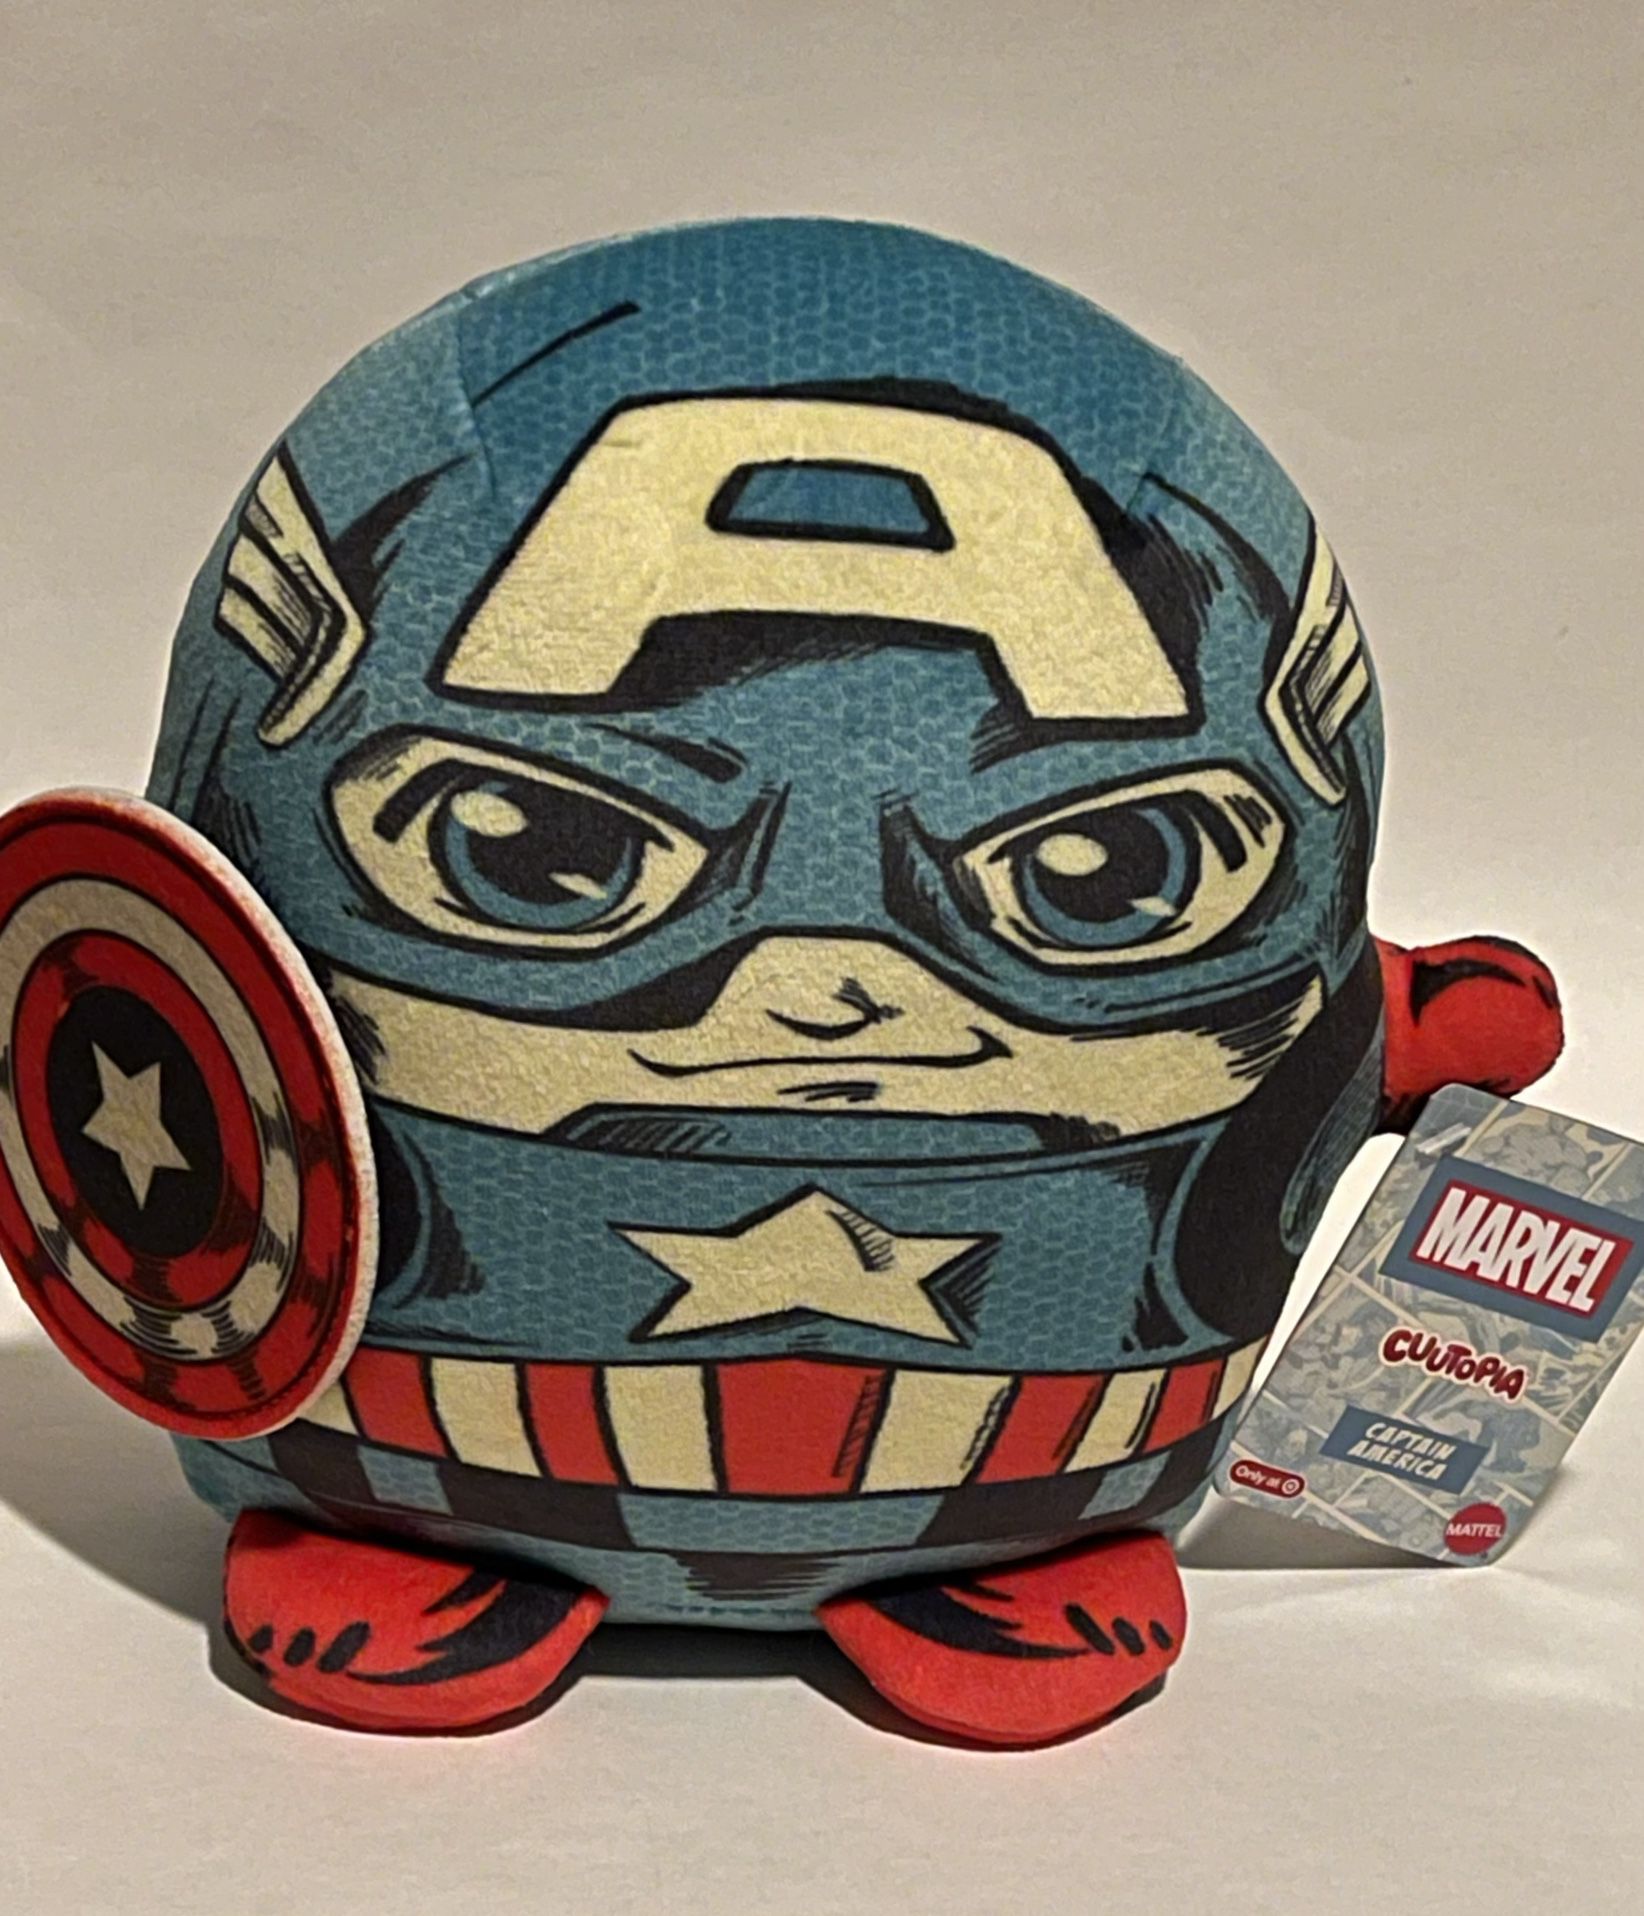 Marvel Cuutopia Captain America Plush